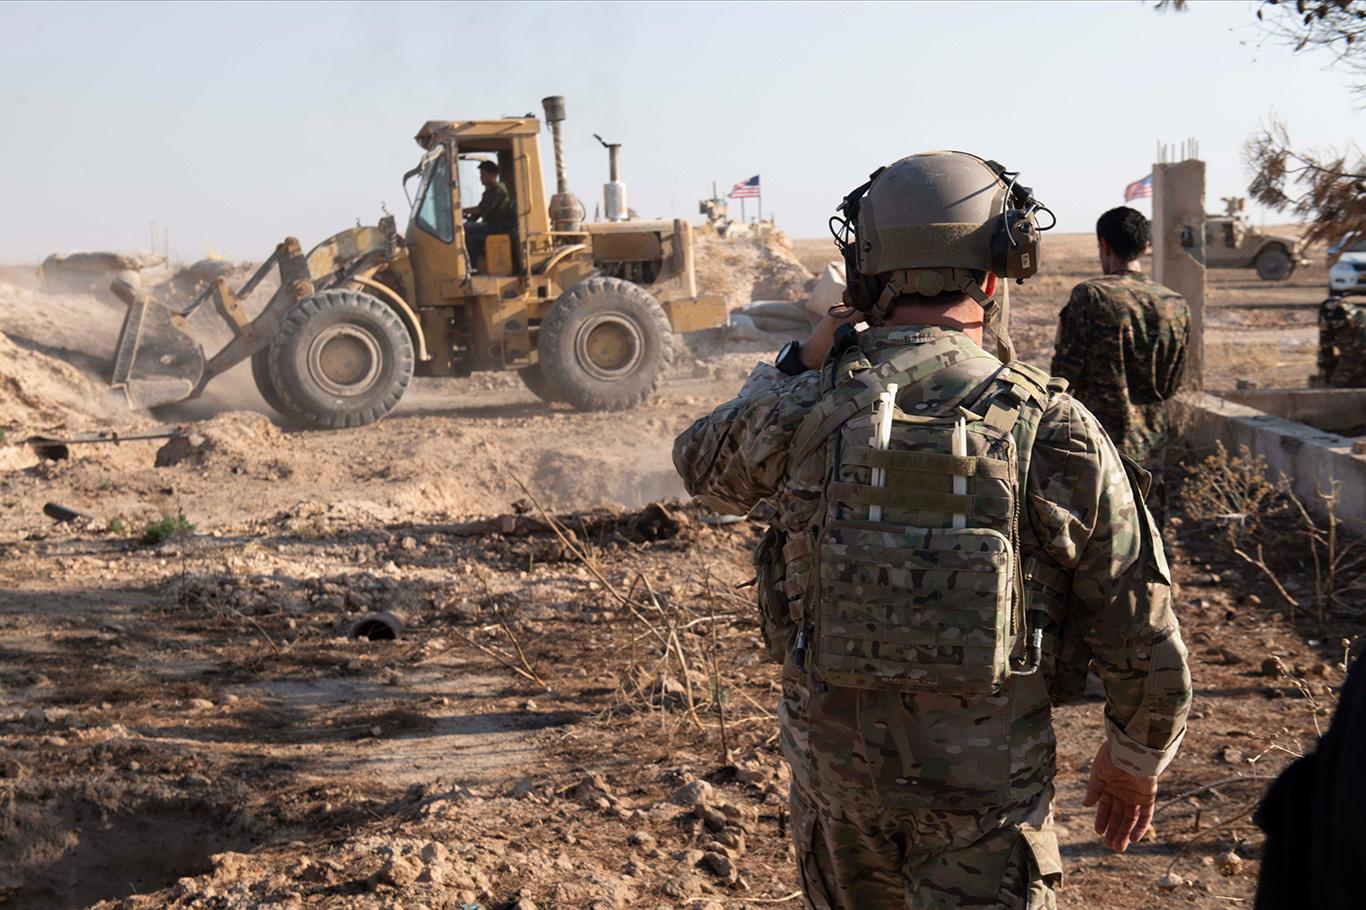 "YPG/PKK Suriye'nin kuzeydoğusunda bazı siperlerini yıktı"